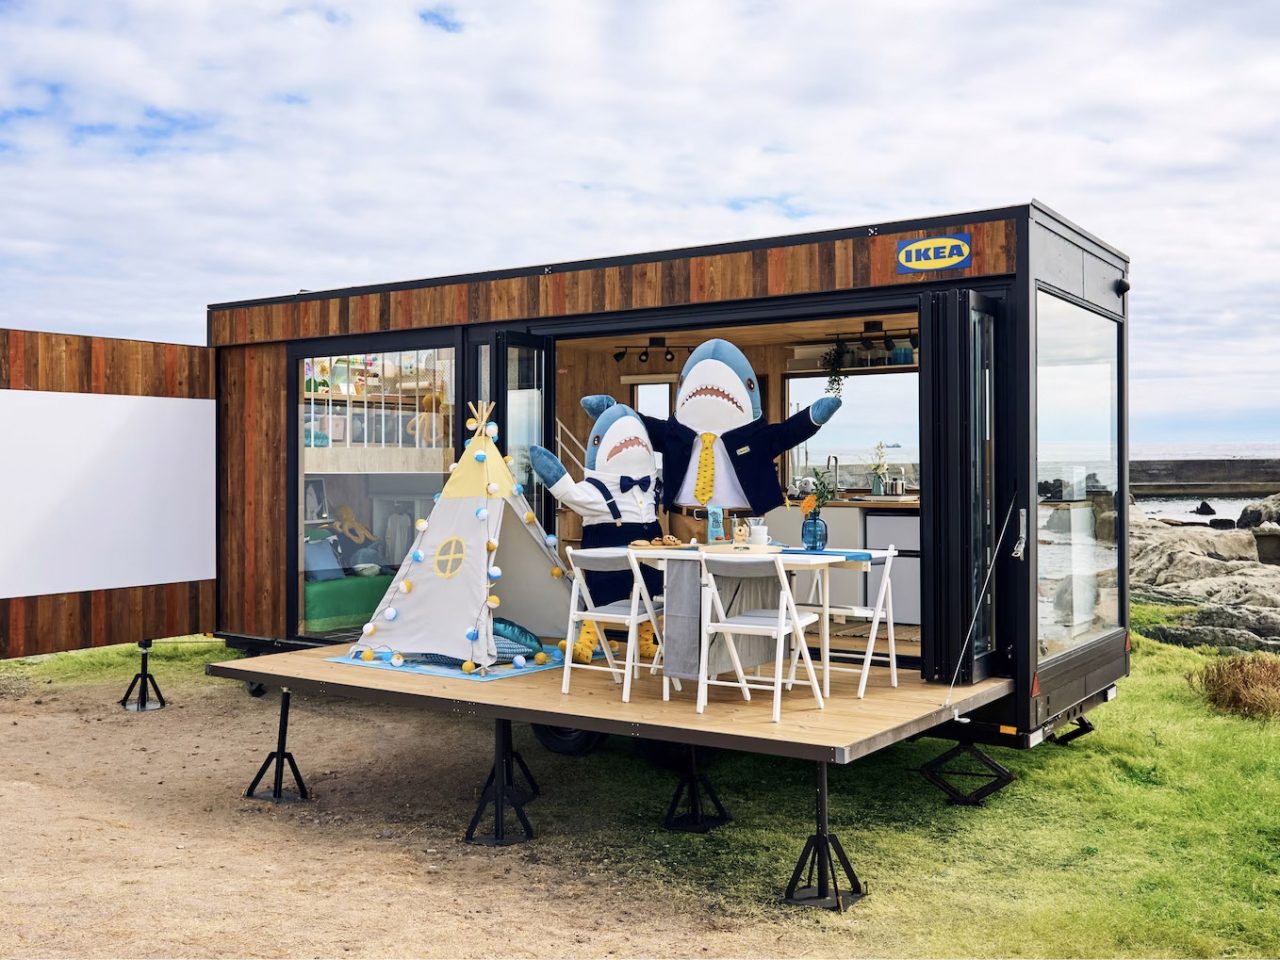 Två personer utklädda i hajdräkter står framför en liten husvagn i trä med IKEA skylt på väggen.